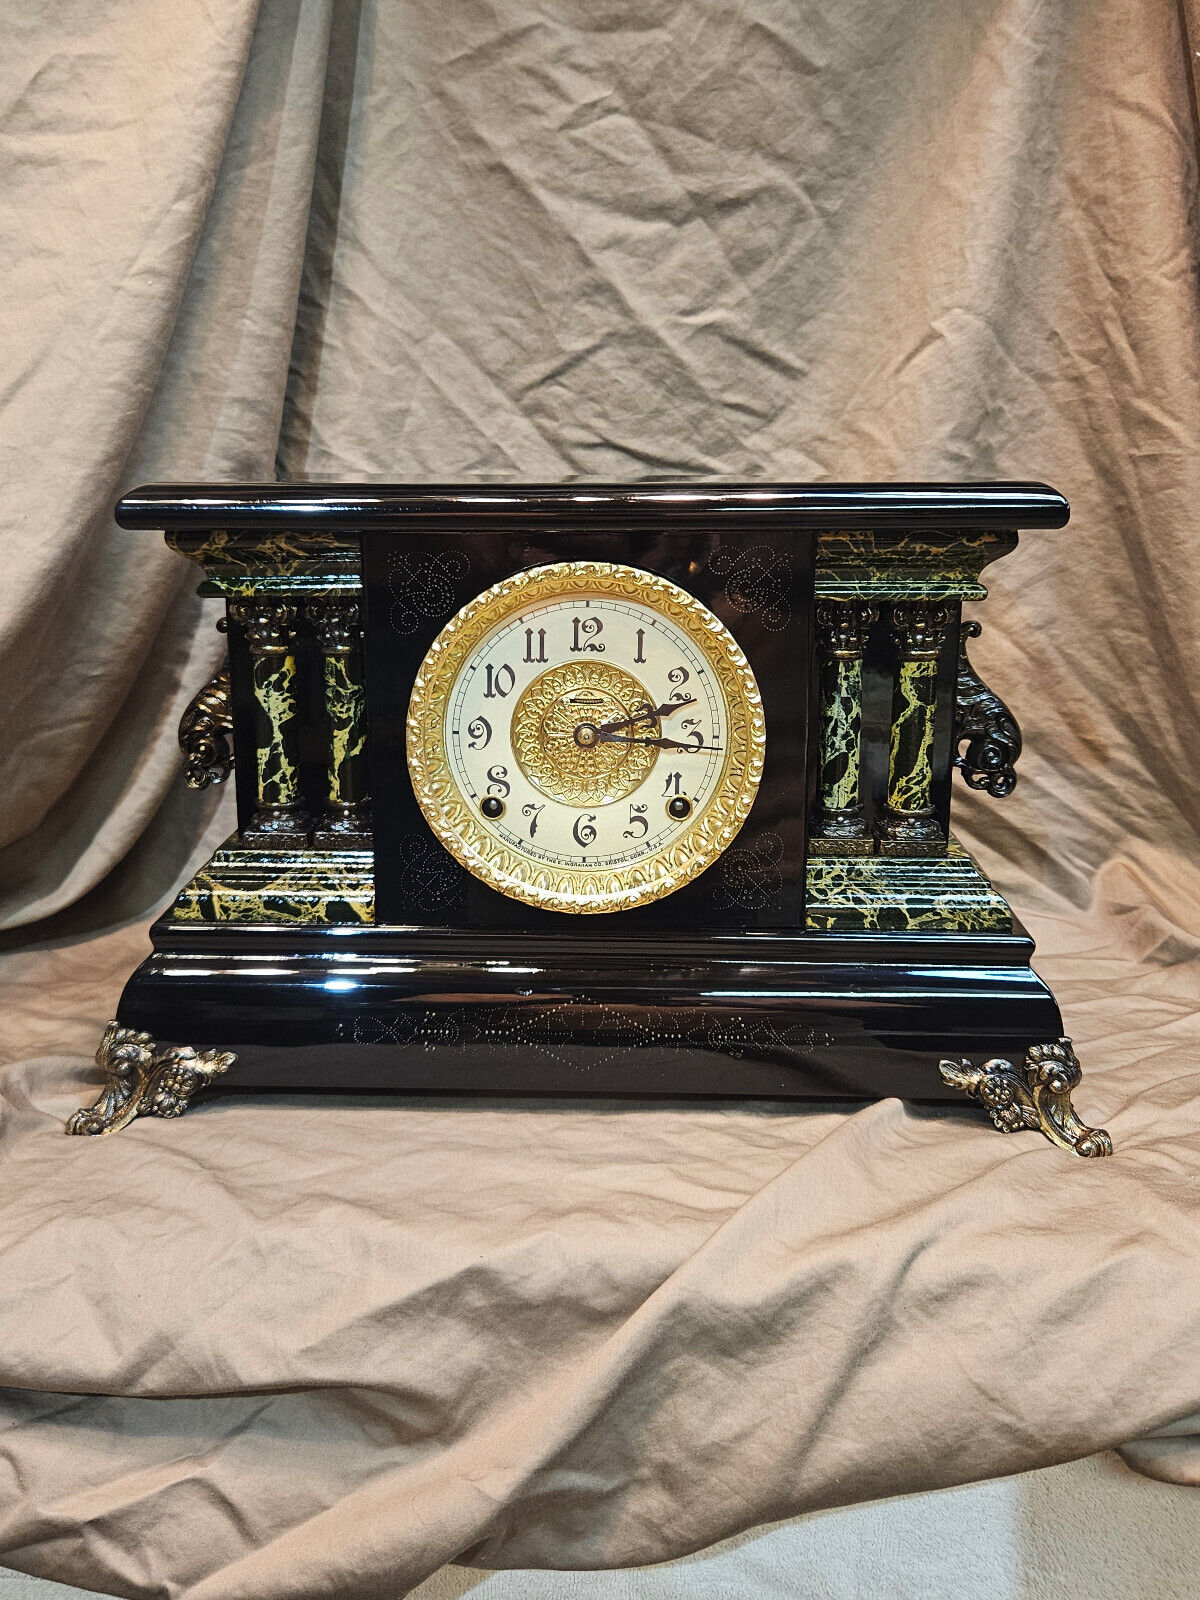 Restored Antique Ingraham Mantel Clock circa 1906 Original Movement